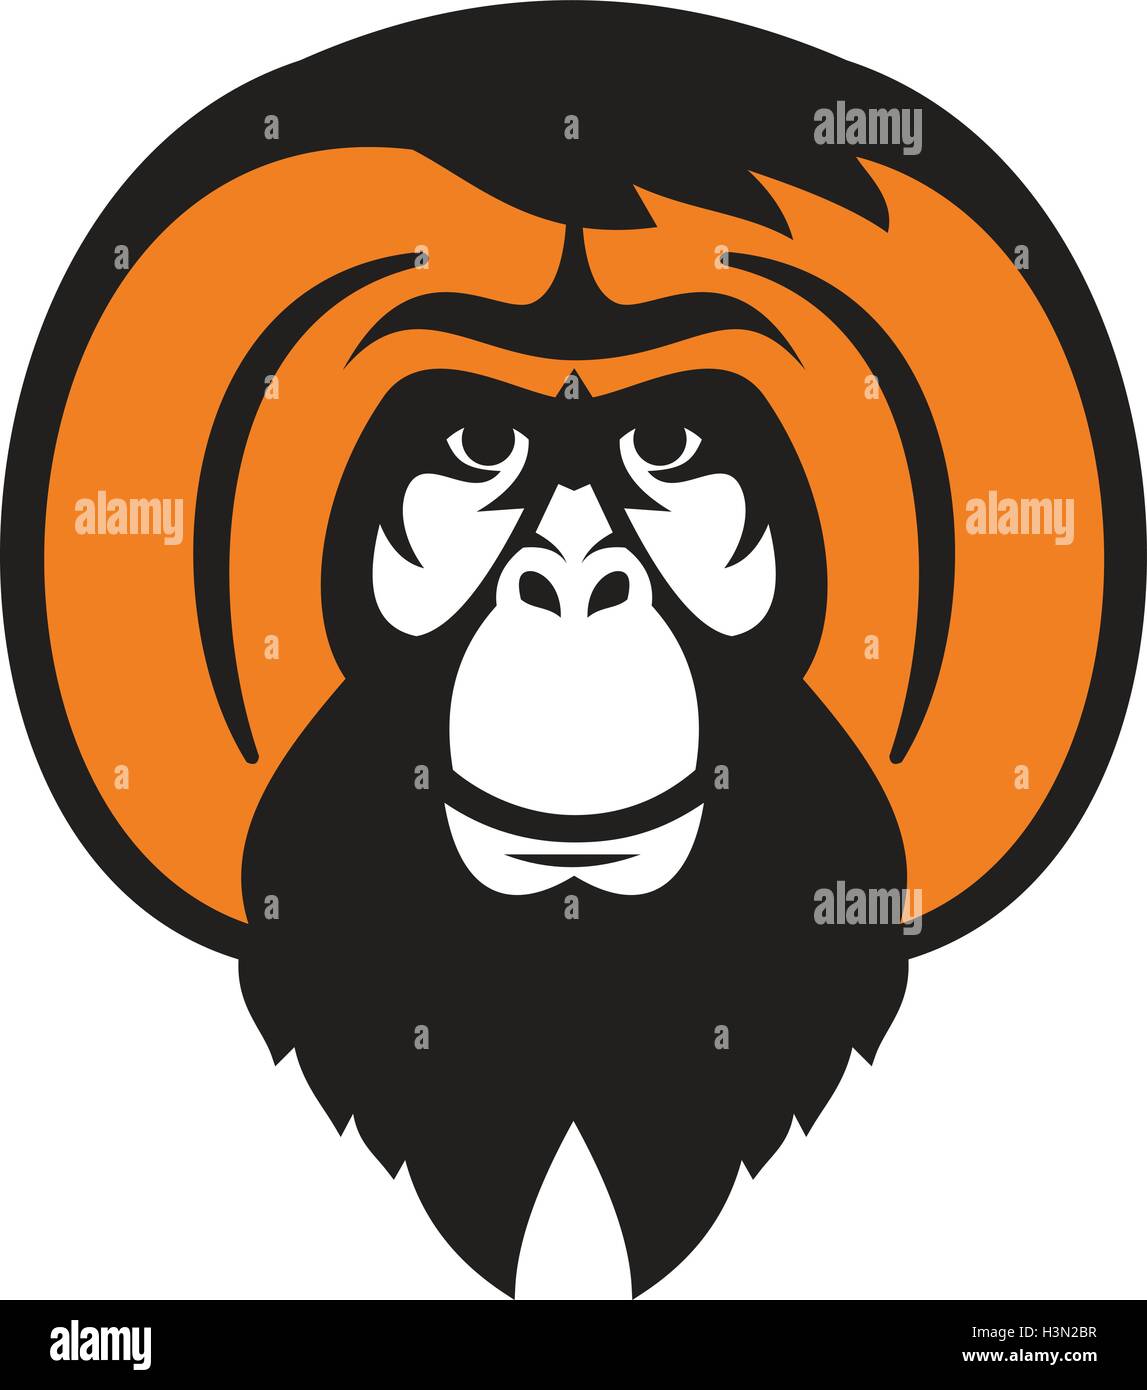 Illustrazione di un orangutan, orango, orangutang o orang-utang una specie asiatiche di extant grandi scimmie con la barba barba e capelli tussled visto dal lato anteriore impostato su isolato sfondo bianco fatto in stile retrò. Illustrazione Vettoriale